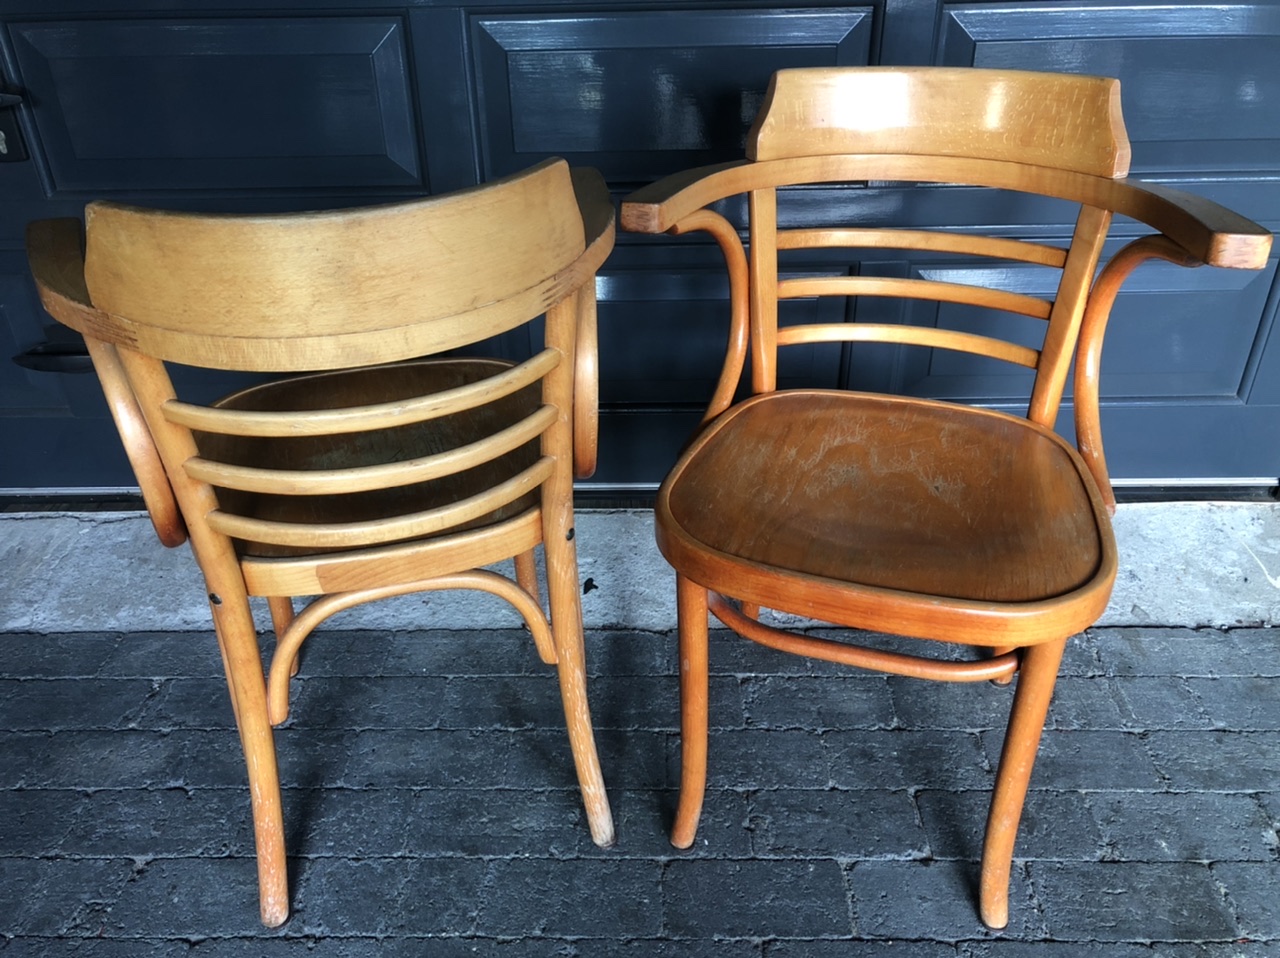 Stamtafel stoelen tische stuhle stolar chaises chairs cafe de parel